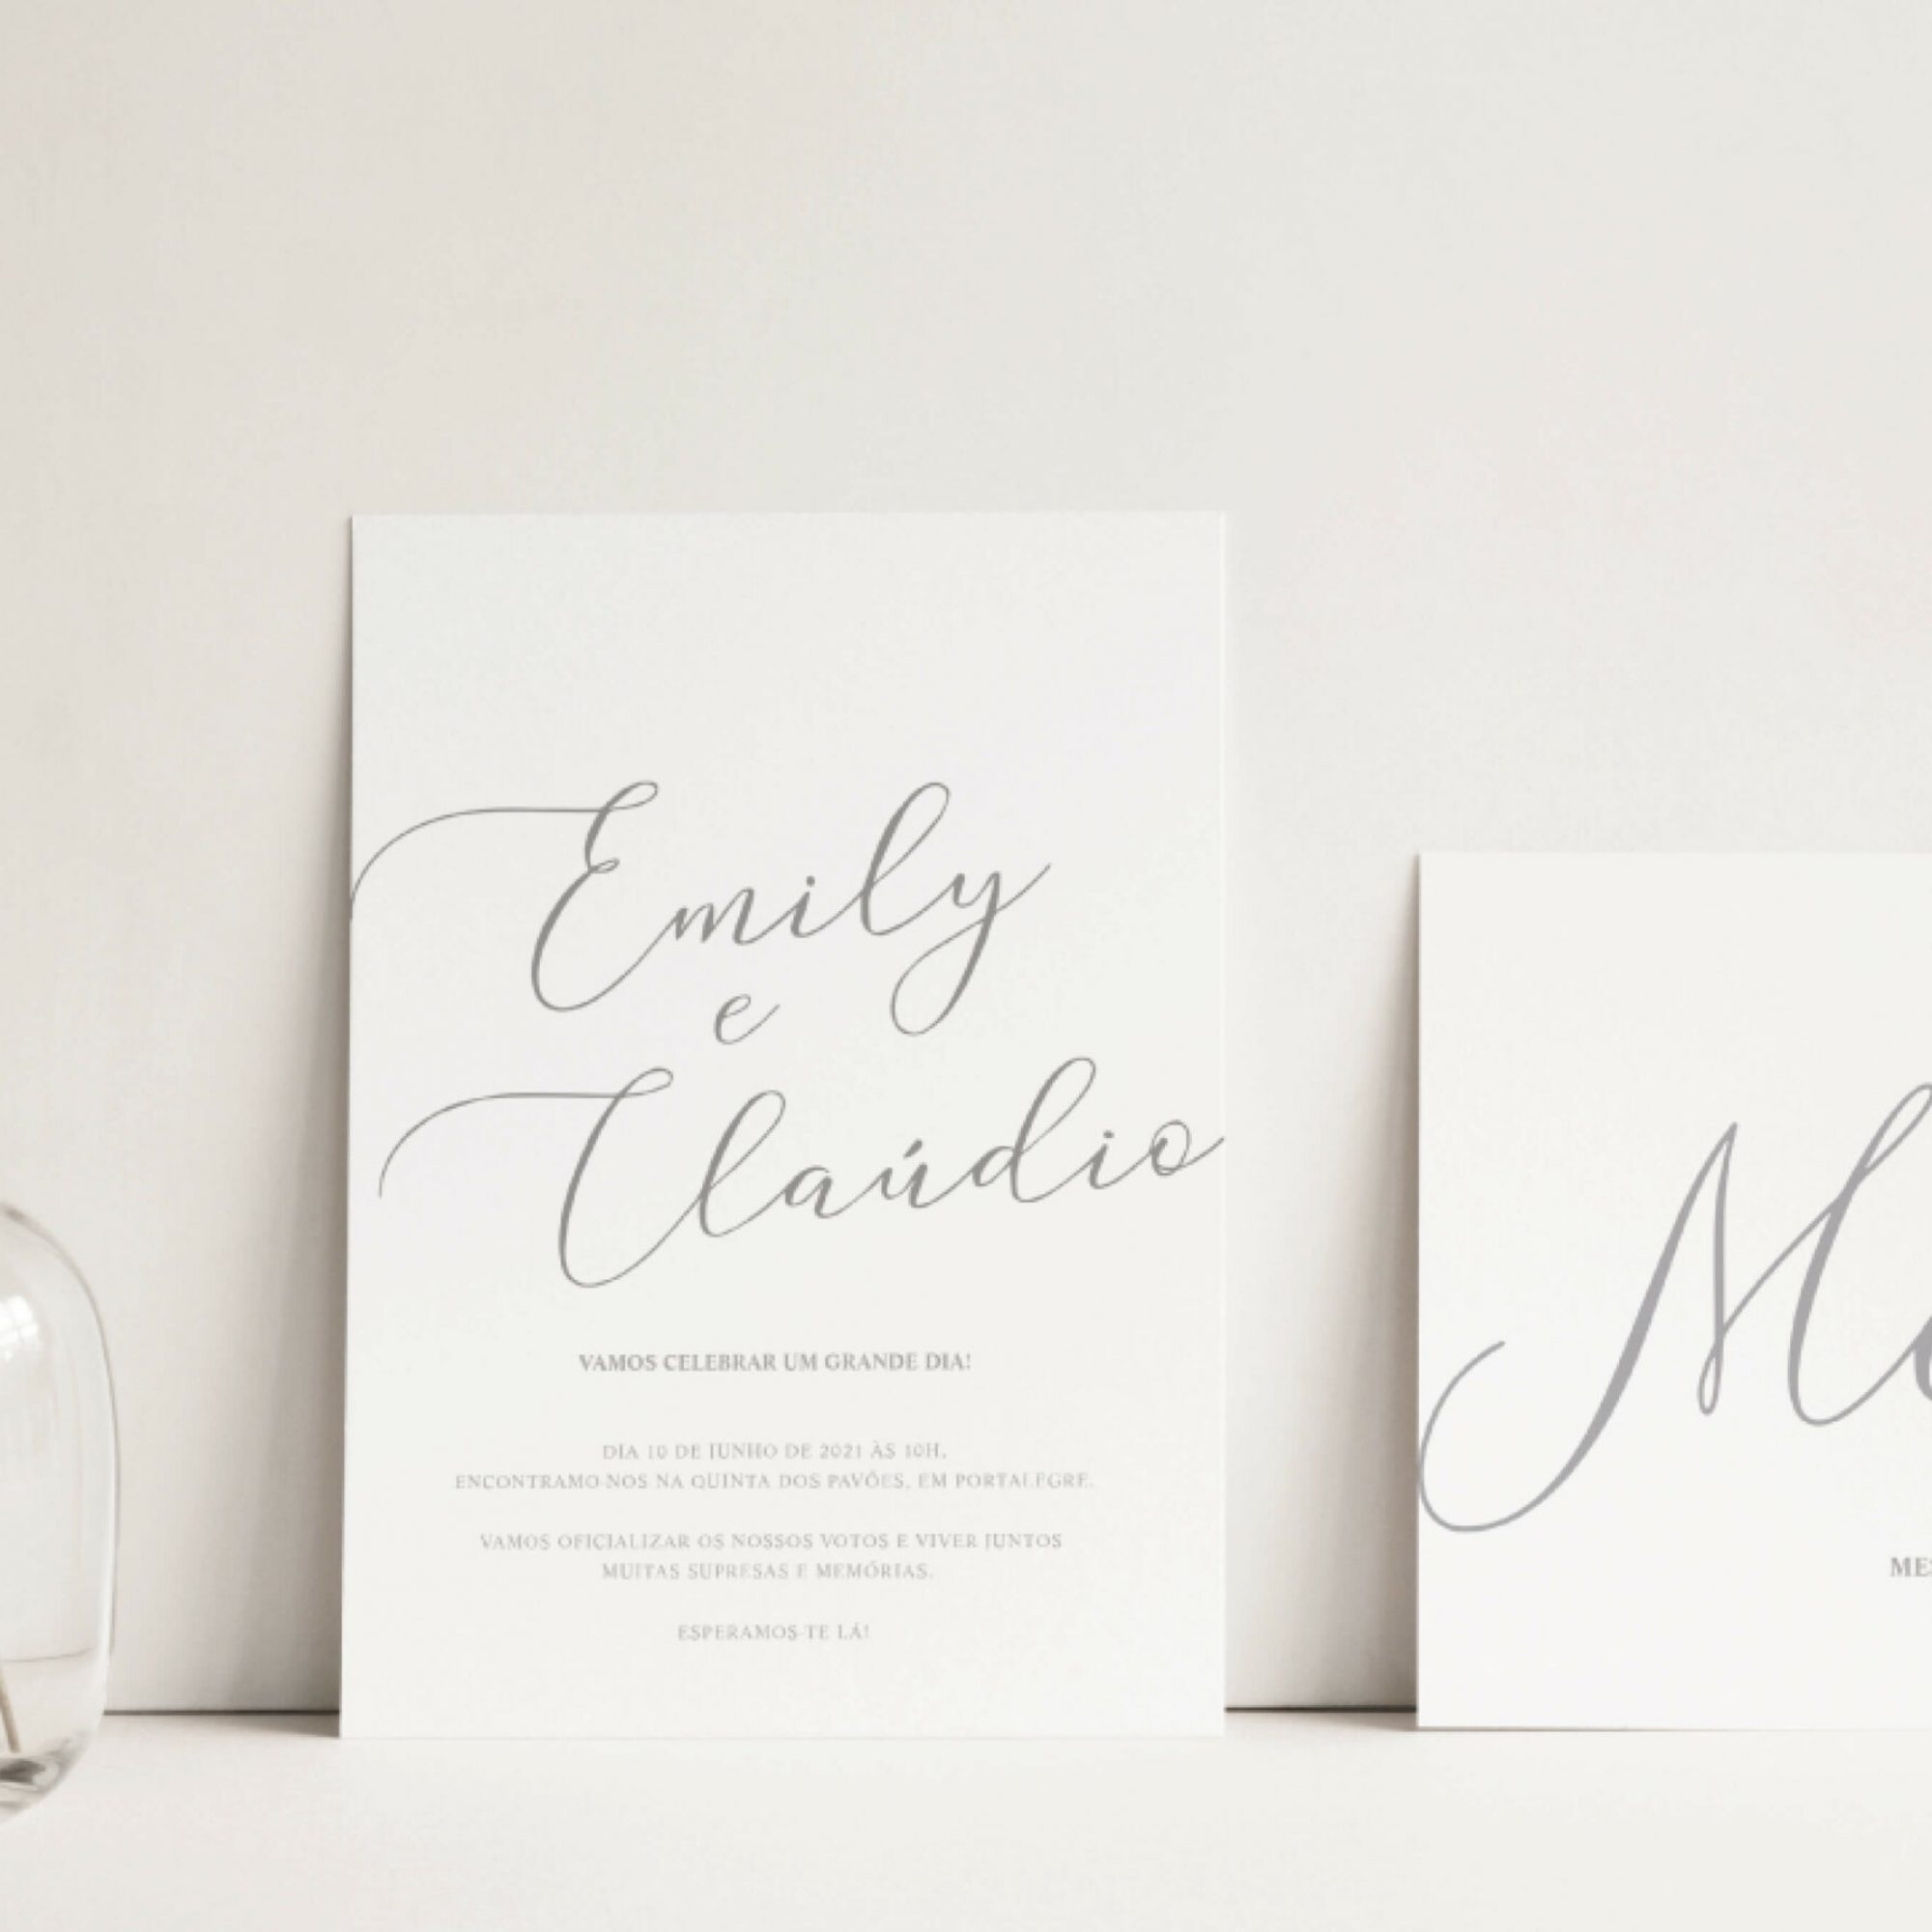 Convite de casamento de estilo tipografico com fundo branco e tipografia verde